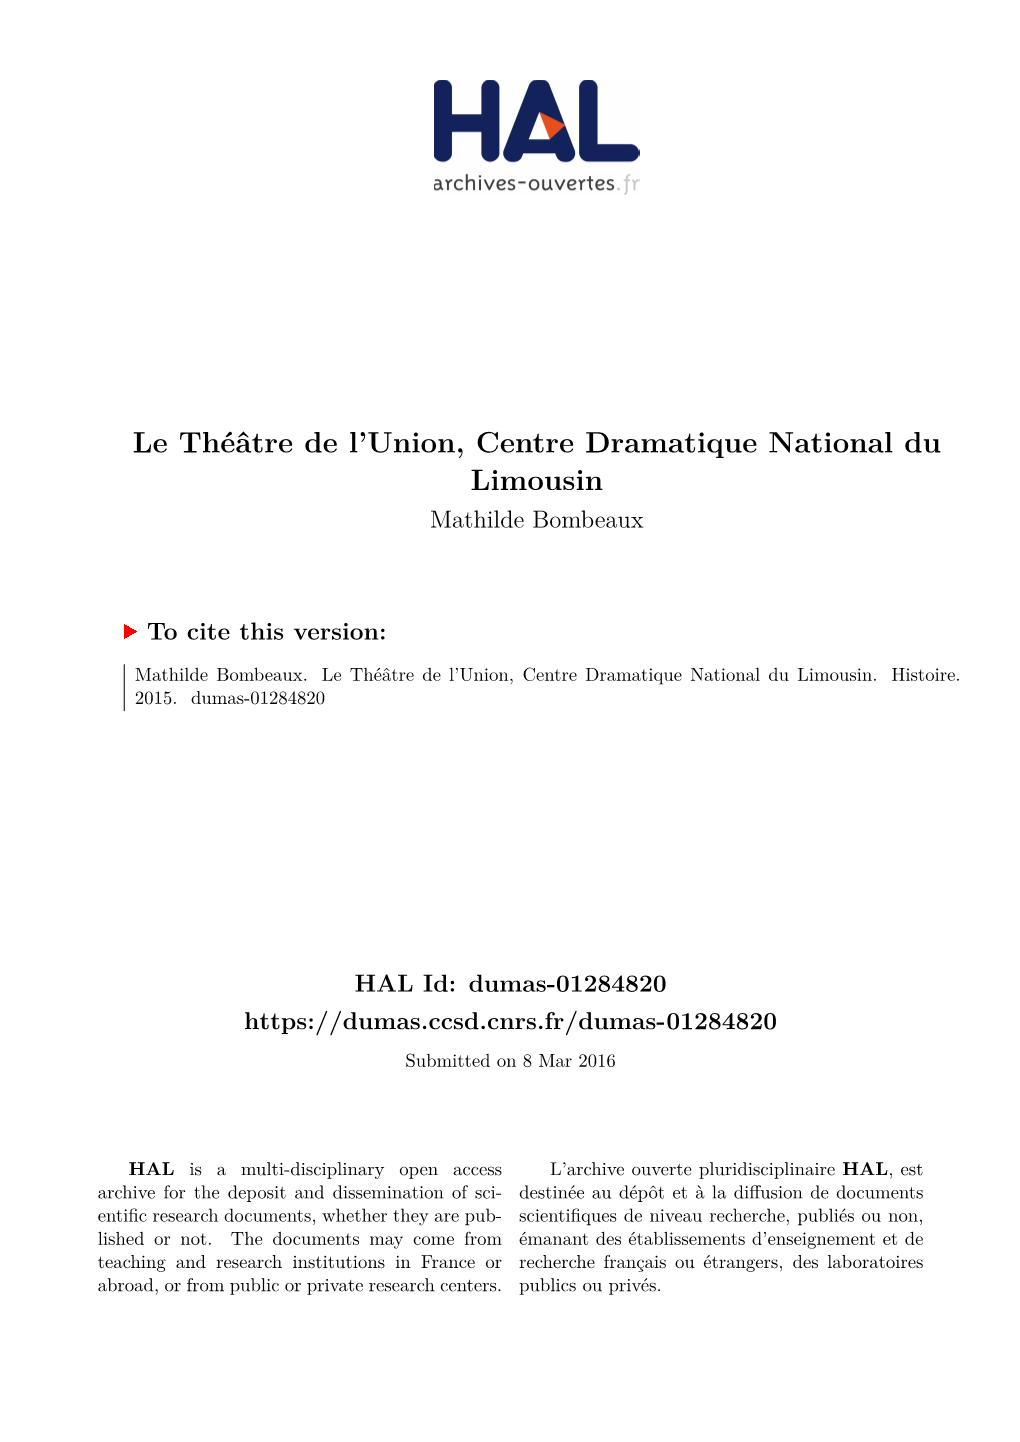 Le Théâtre De L'union, Centre Dramatique National Du Limousin